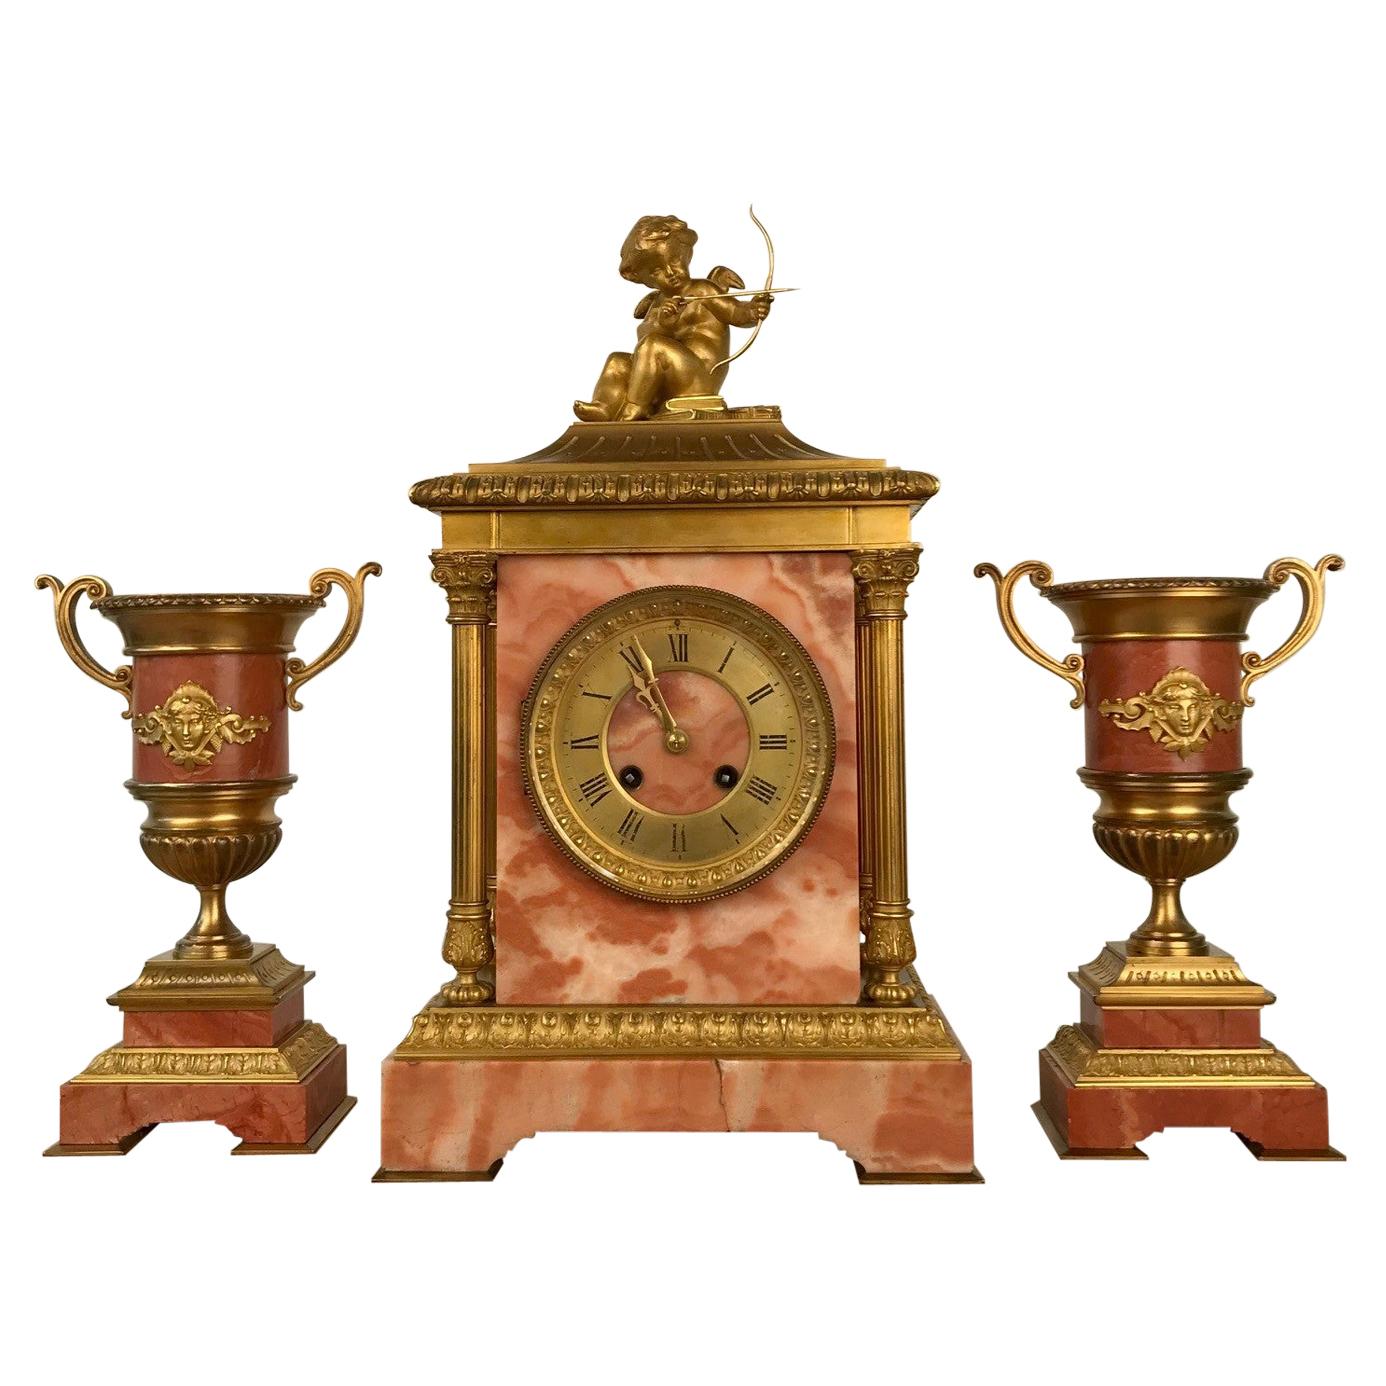 Garniture de Cheminee d'horloge française par Etienne Maxant